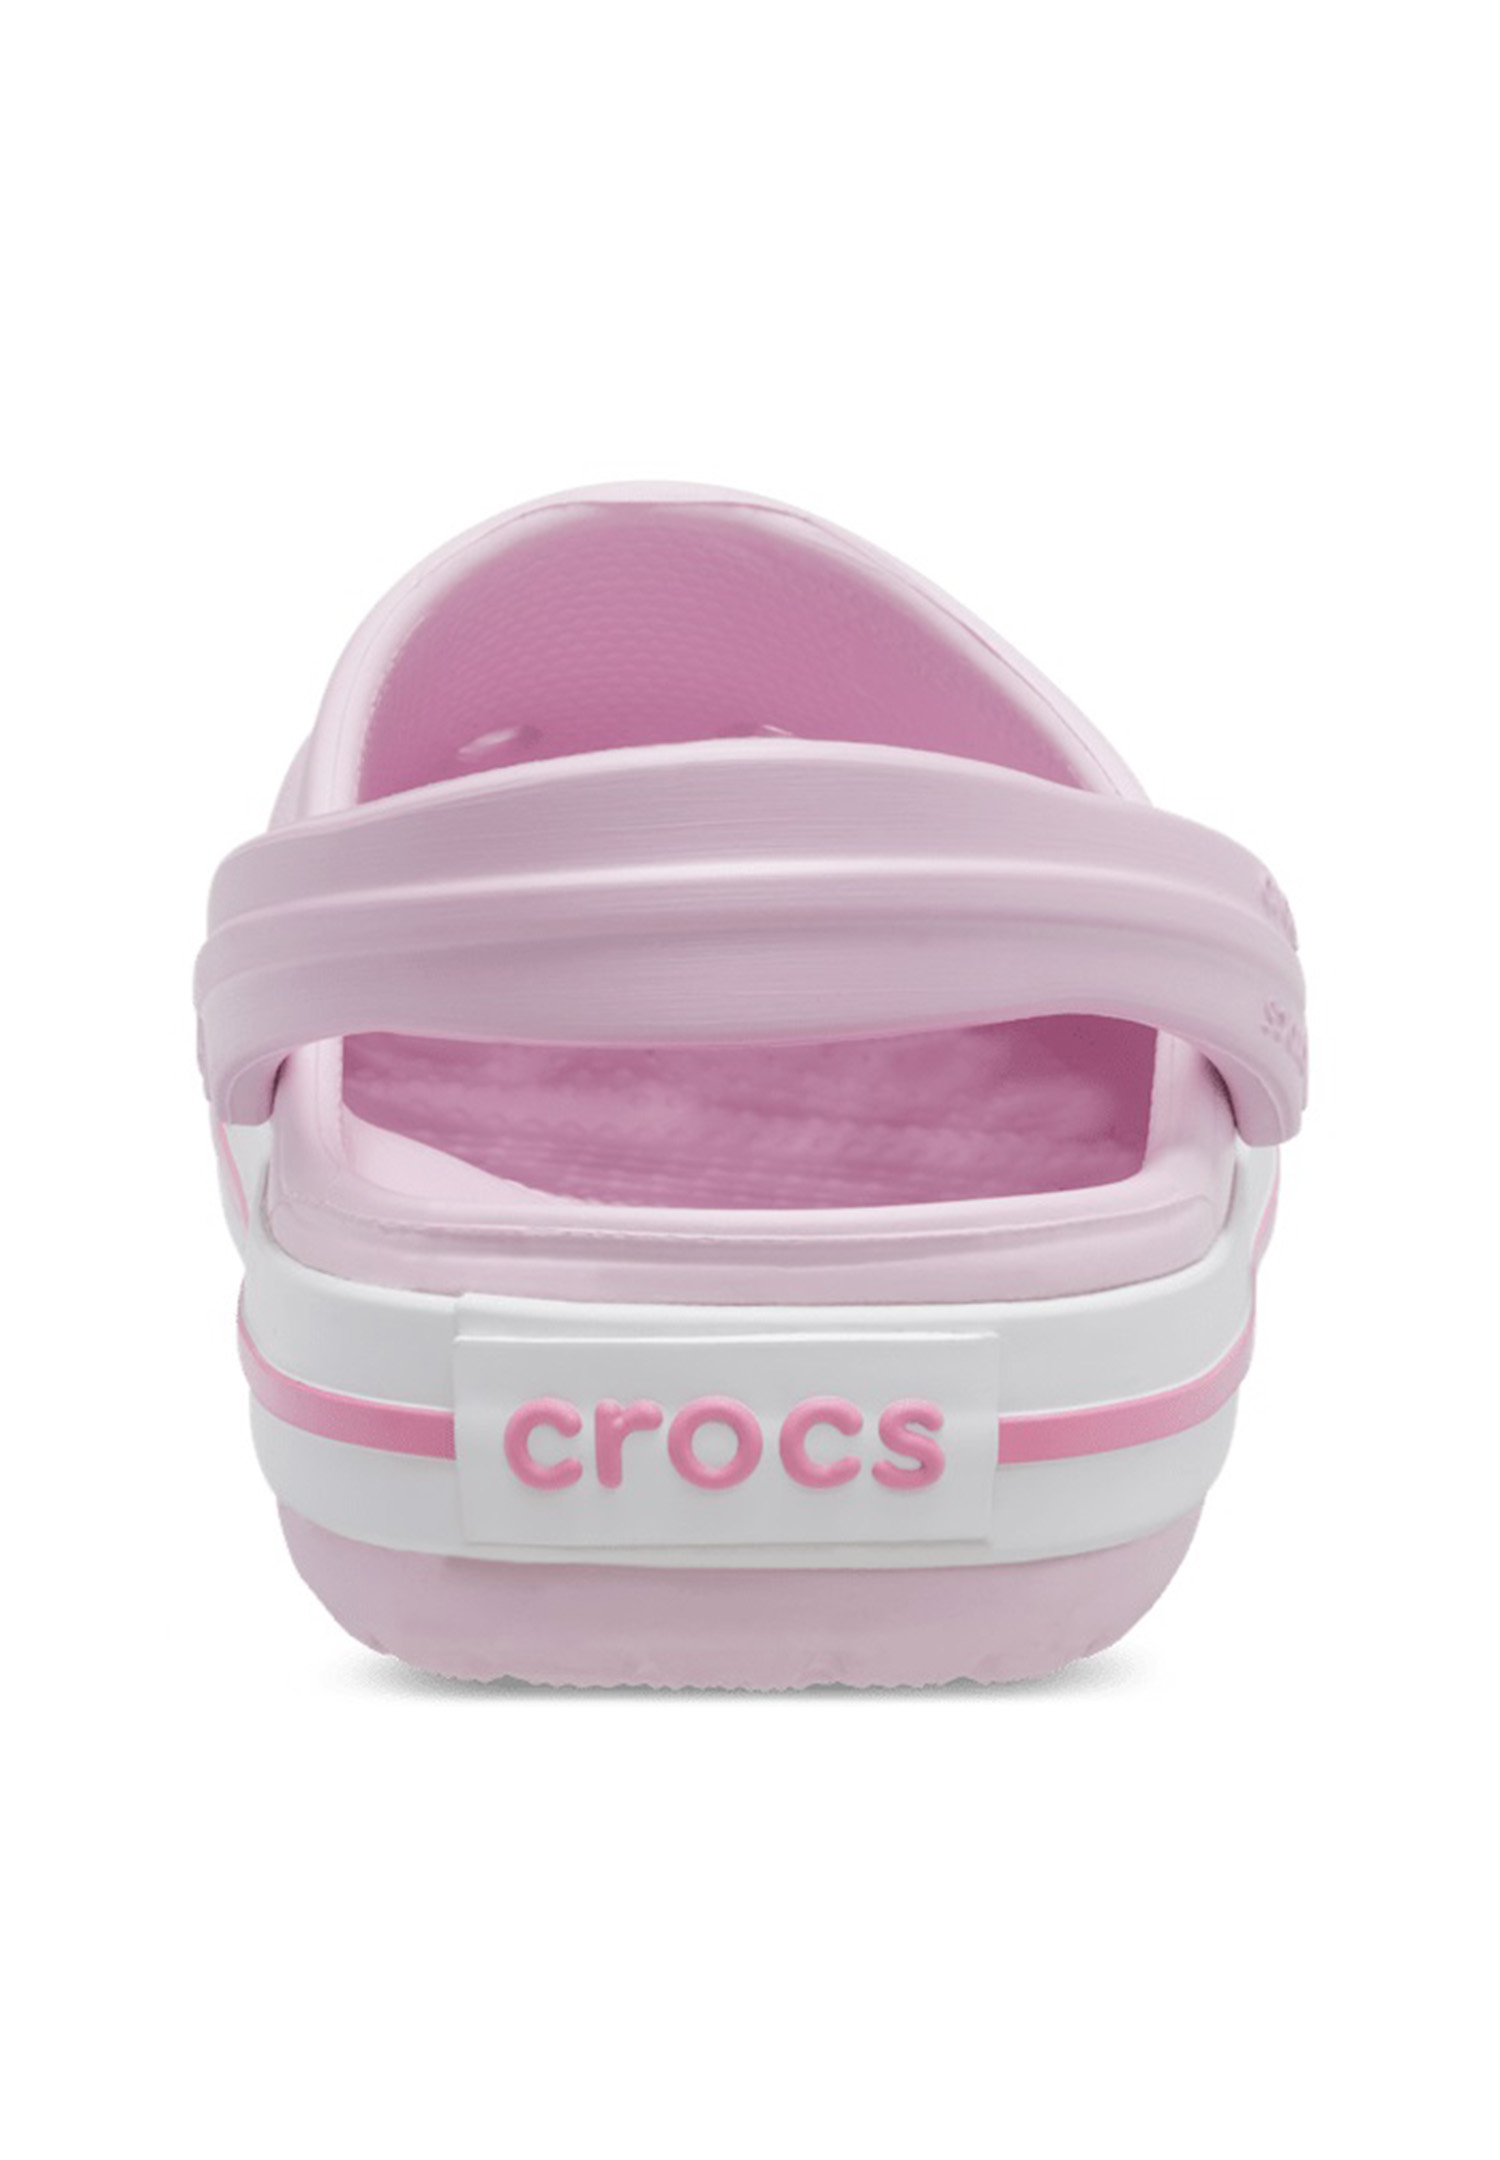 Crocs Kids Crocband Clog Unisex Kinder Schuhe Sandalen 207006 Rosa 